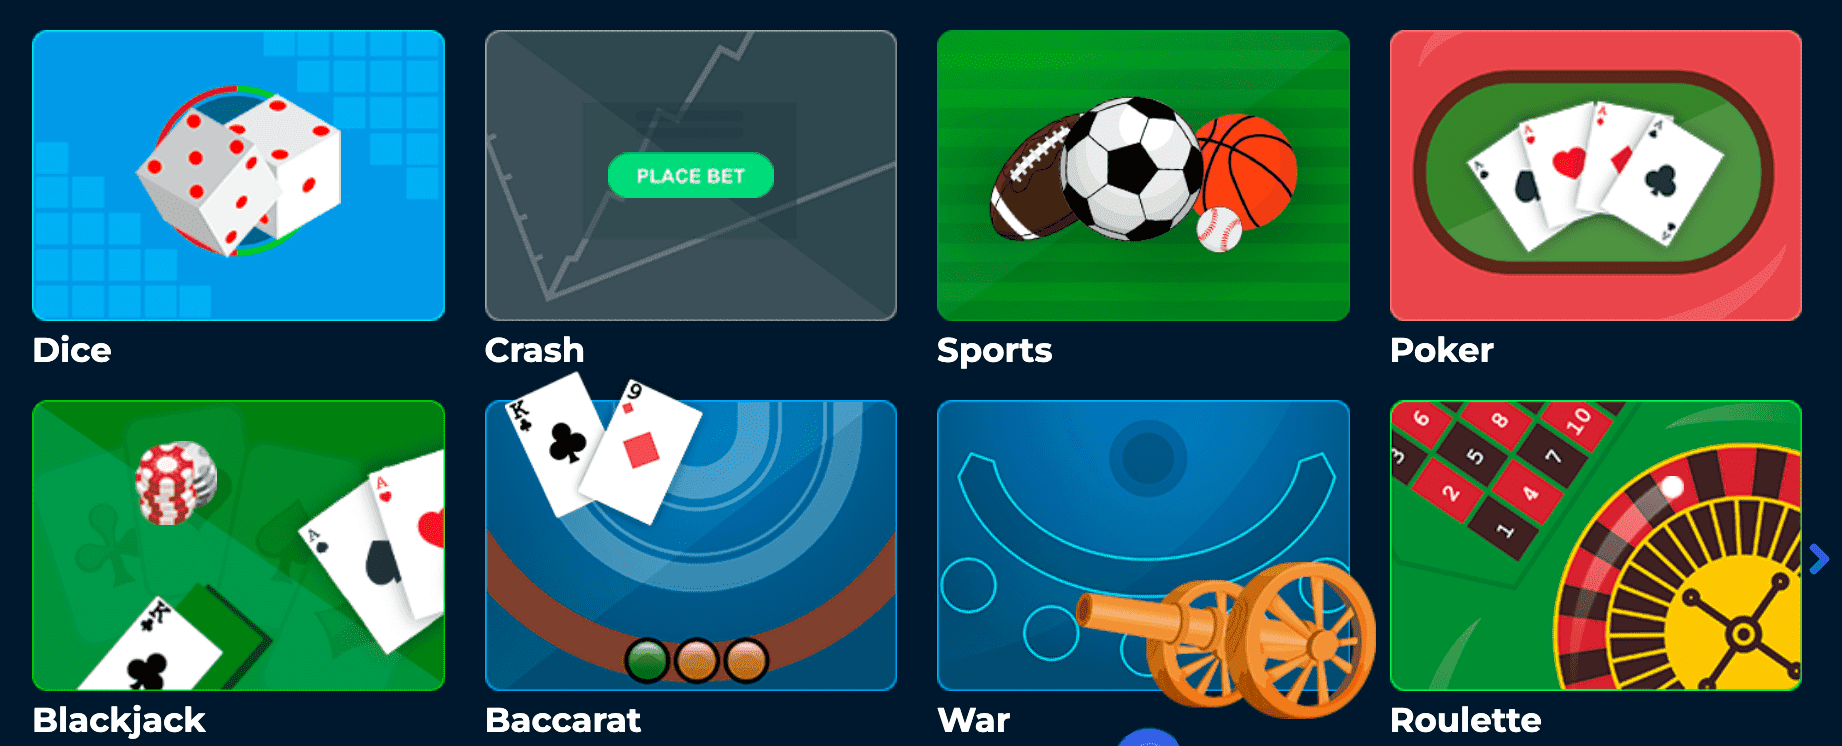 runescape gambling website